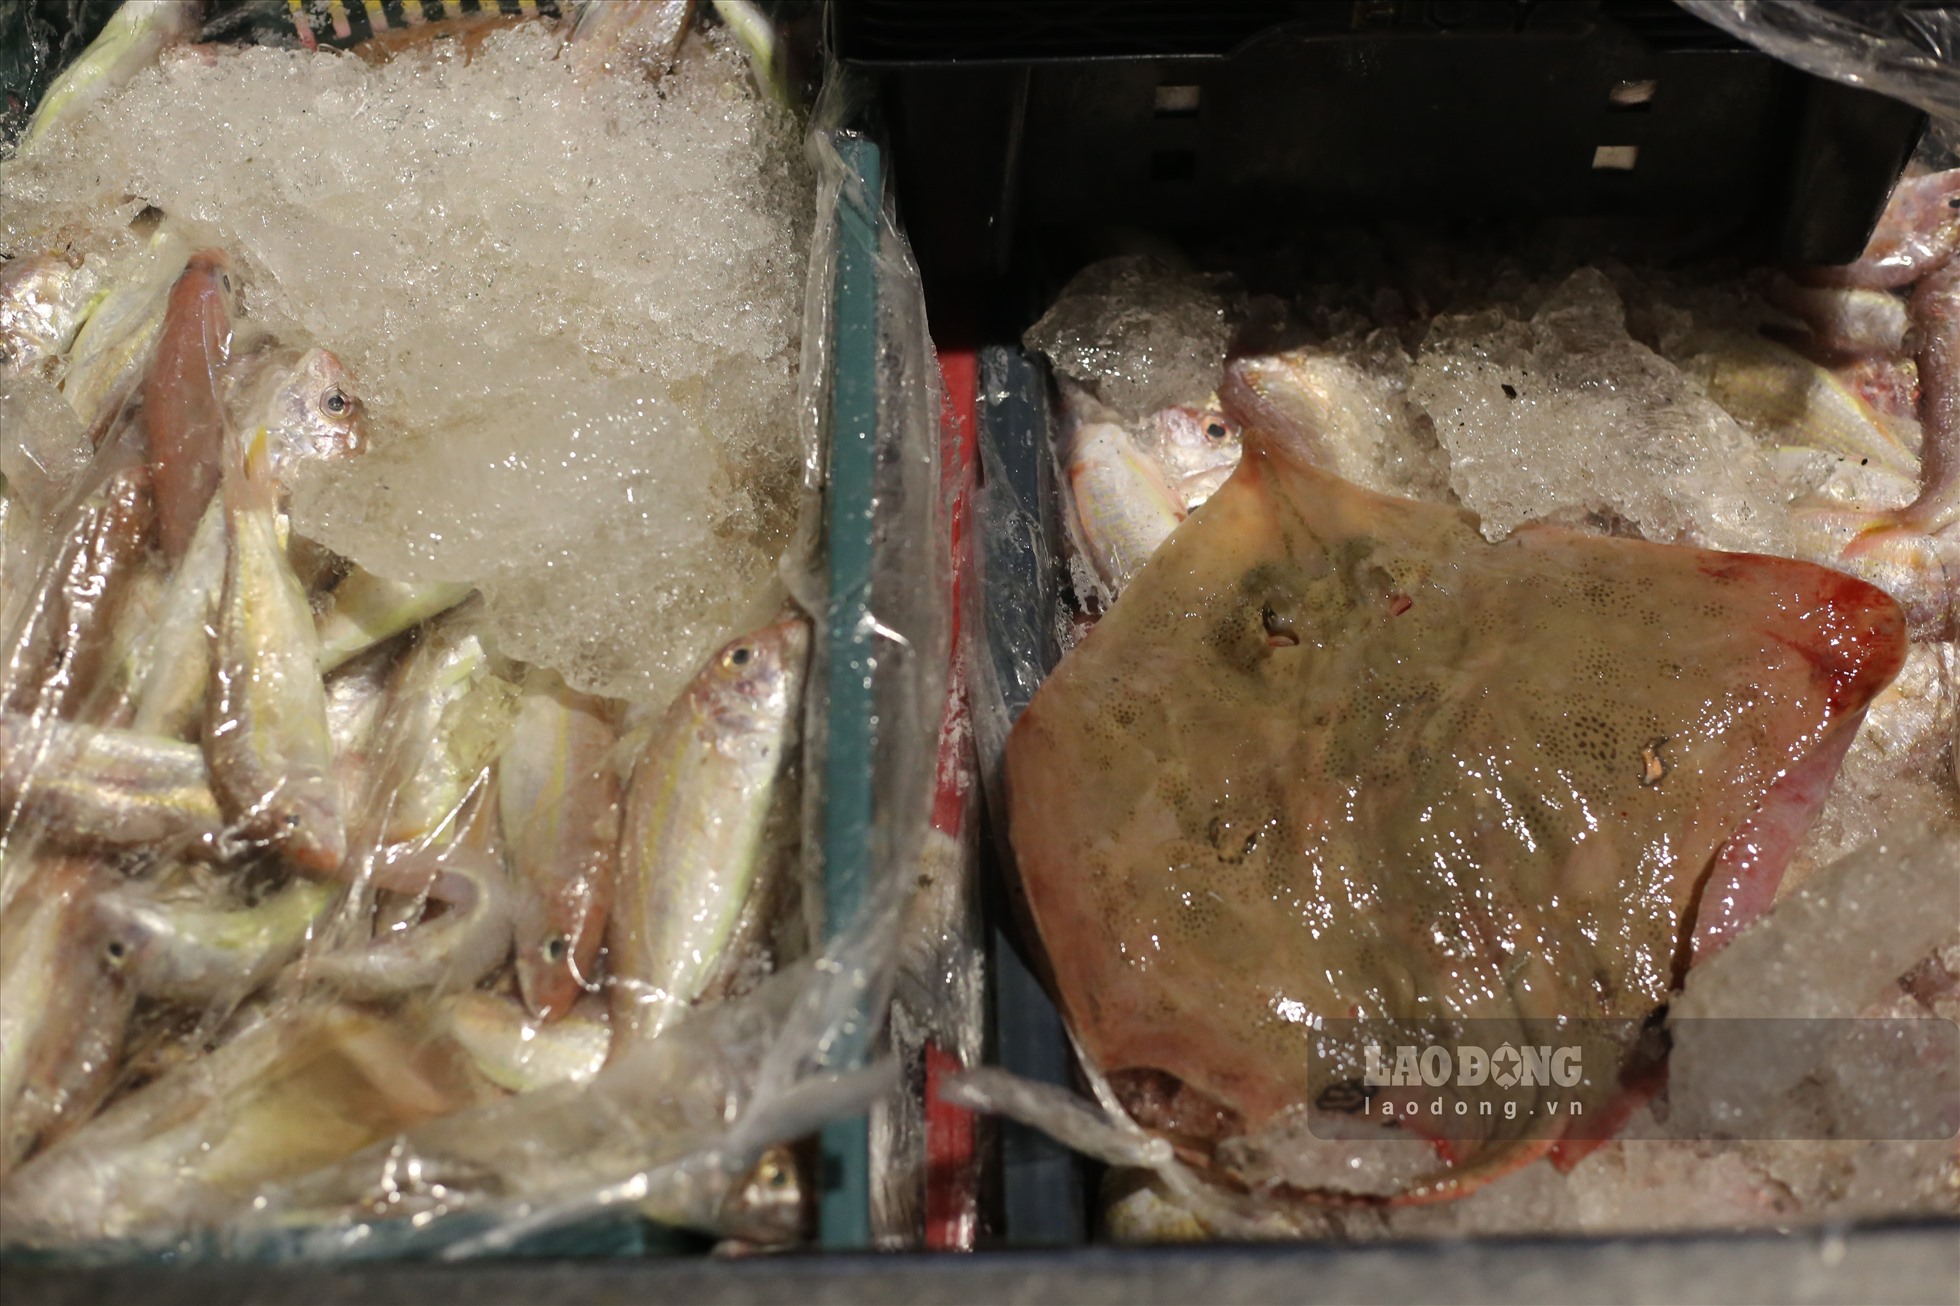 Đa phần cá được bán là cá cũ trước đó, được tiểu thương cấp đông mang ra bán lại, khiến người mua không mấy mặn mà.